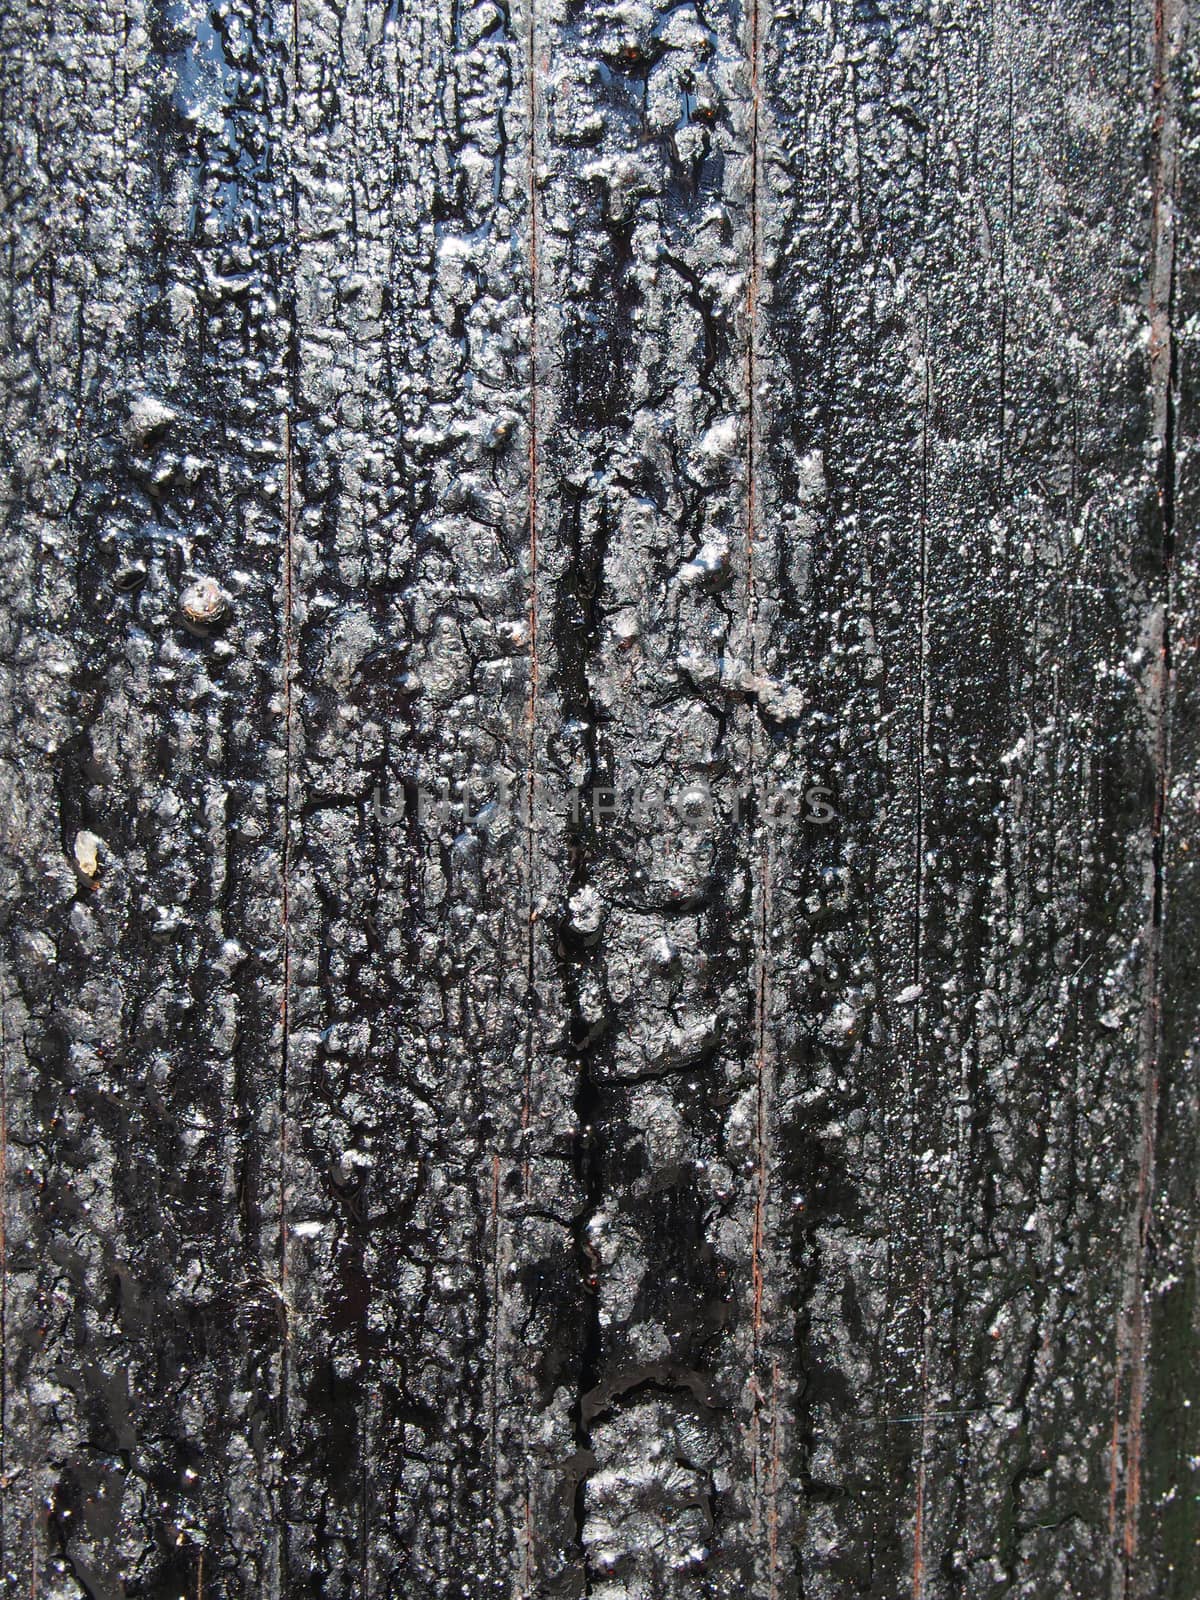 a black melting old bitumen preservative covered textured wooden surface